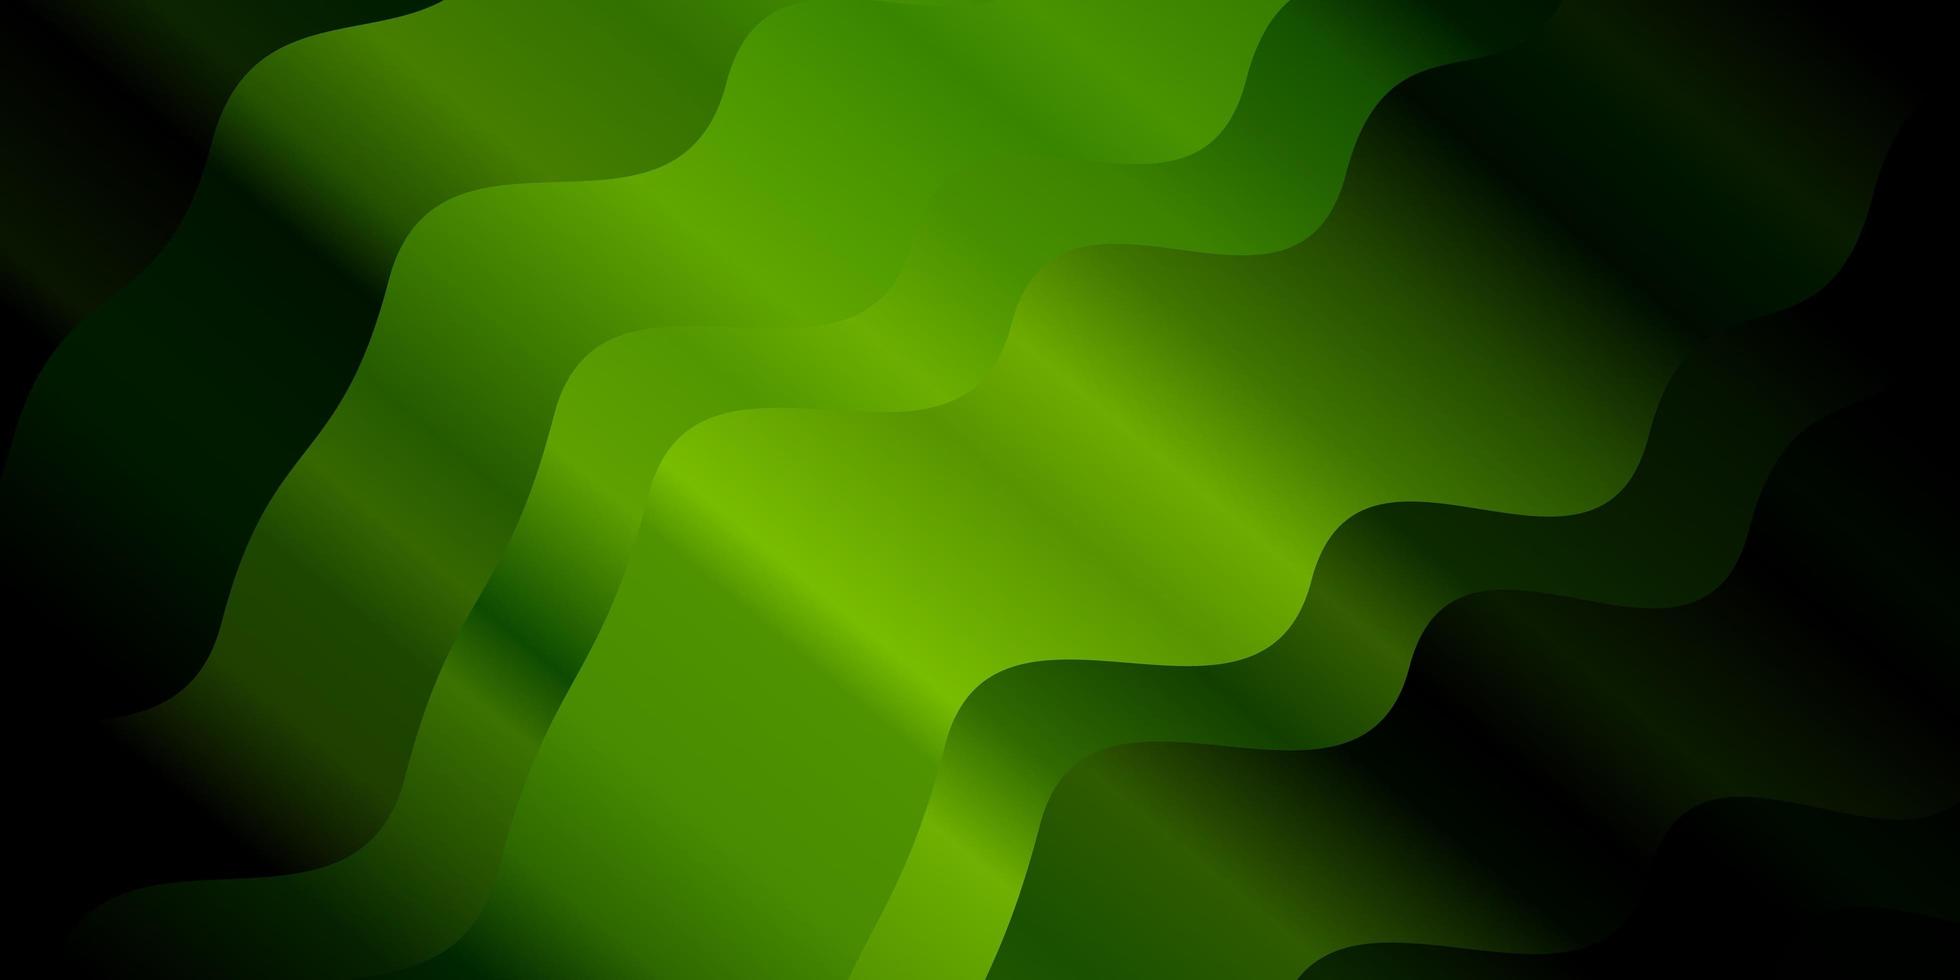 sfondo vettoriale verde scuro con linee piegate.